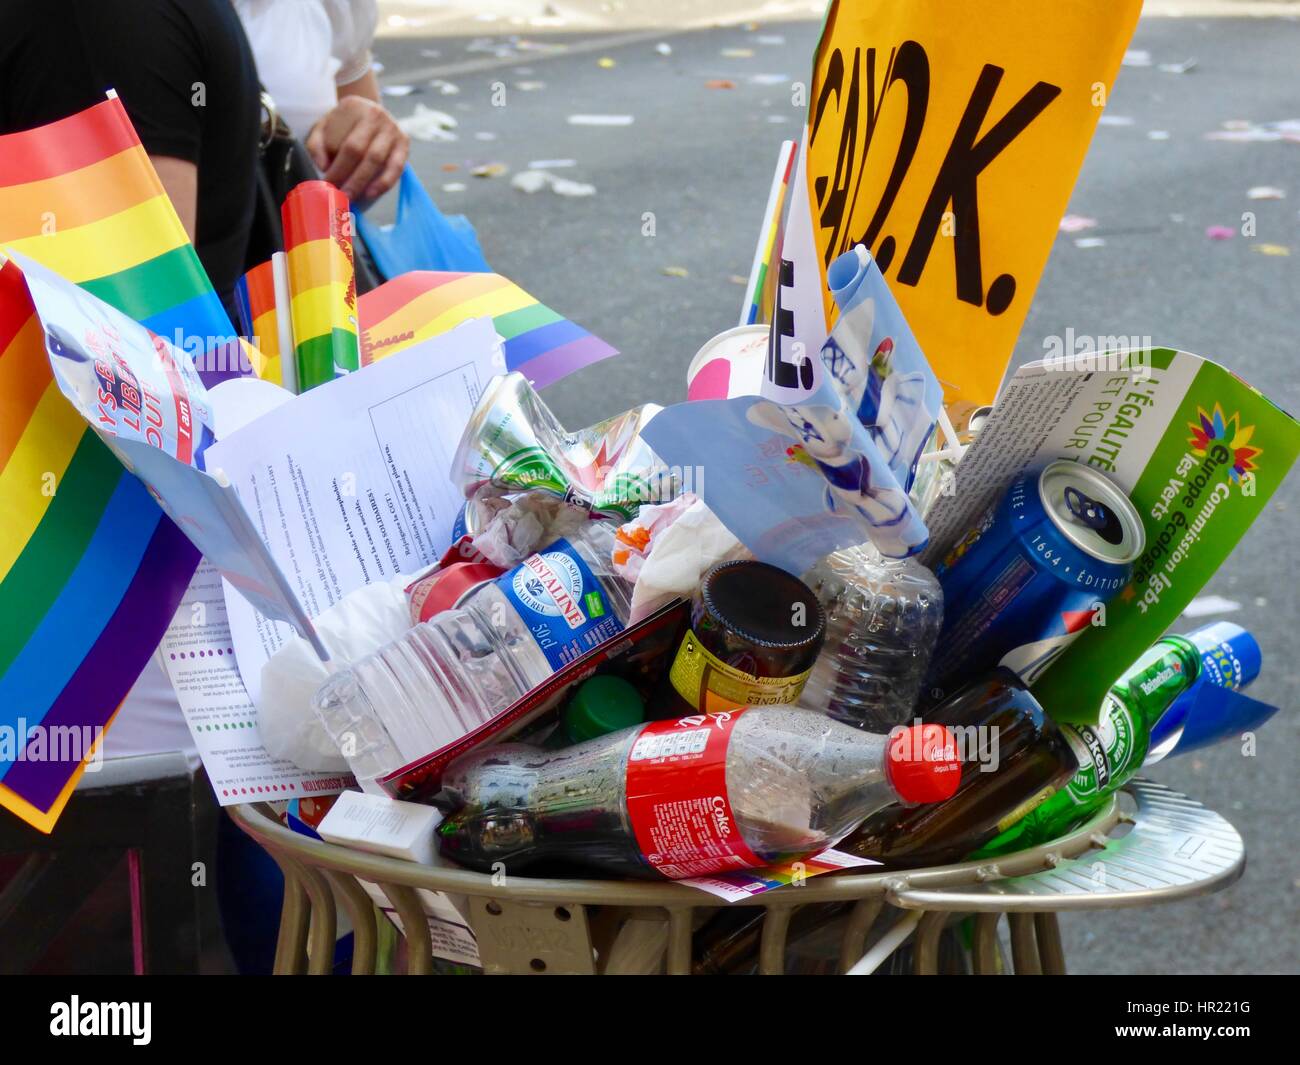 Un assortiment de boîtes de conserve, bouteilles, ordures et de drapeaux arc-en-ciel dans la corbeille après le 2015 Paris Gay Pride (Marche des Fiertés). Blvd Saint-Michel, Paris Fr Banque D'Images